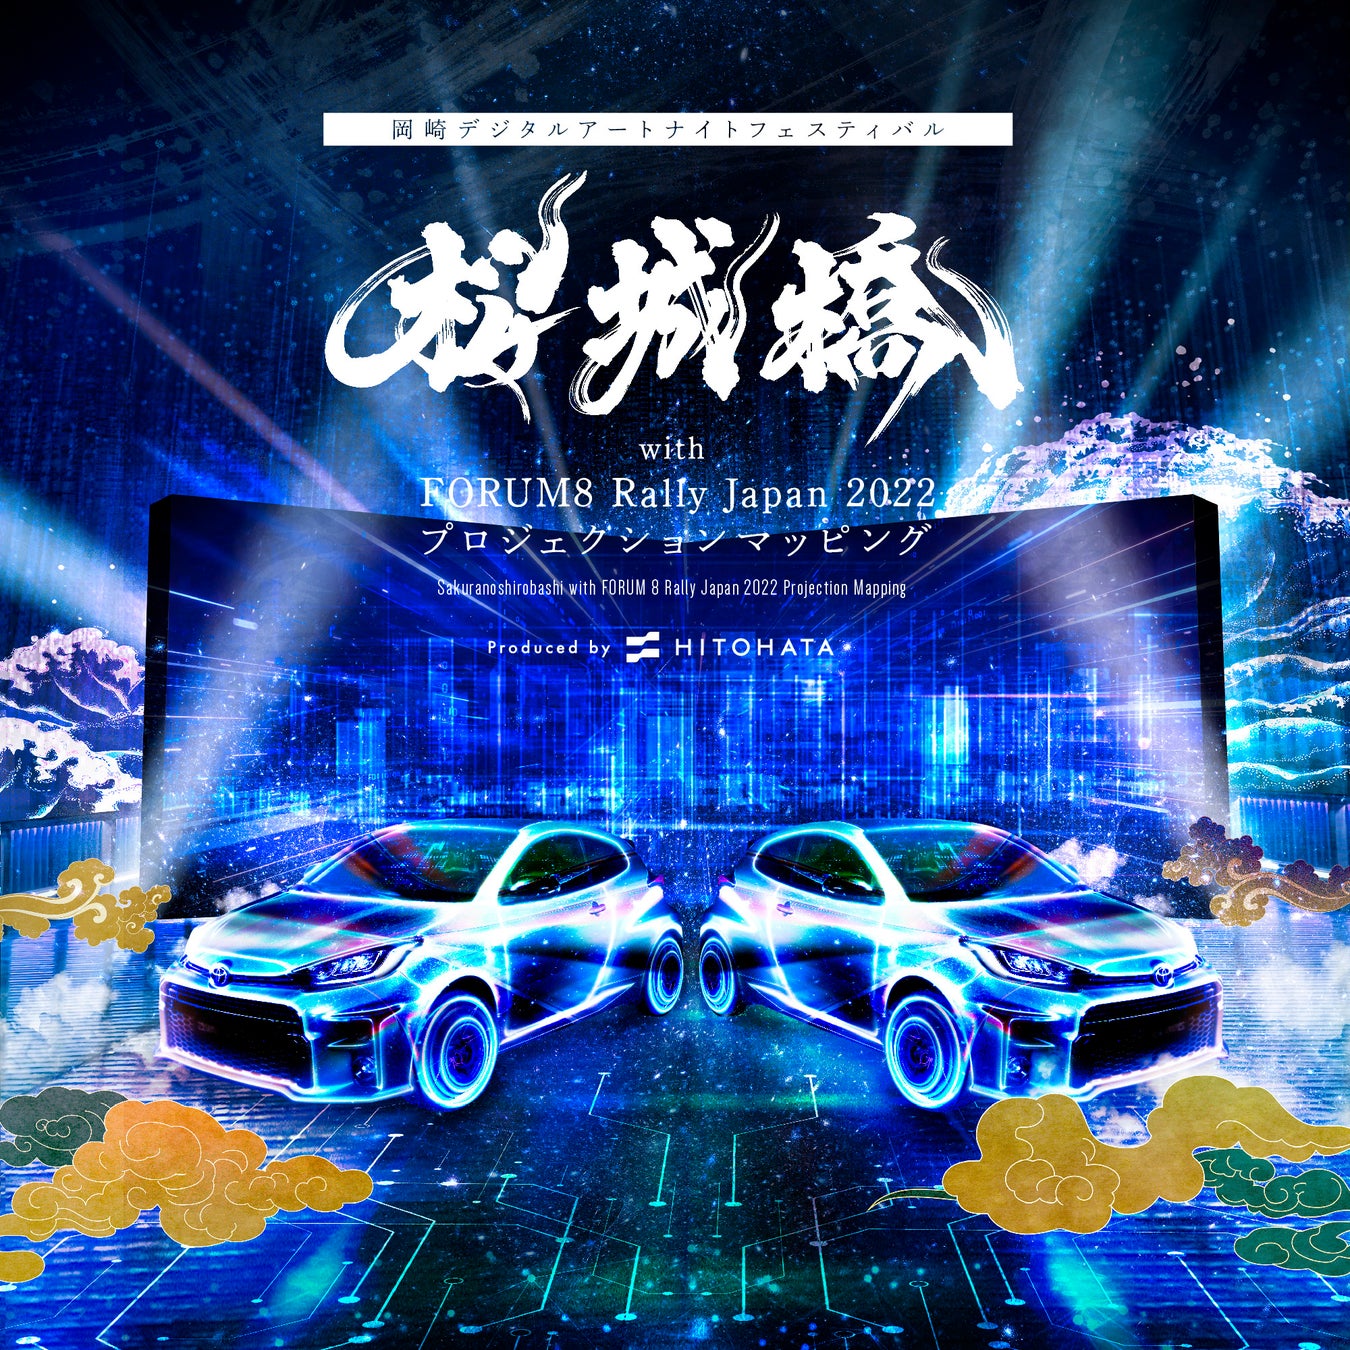 【開催中】一旗プロデュース「桜城橋 with FORUM8 Rally Japan 2022 プロジェクションマッピング」を開催中。「岡崎デジタルアートナイトフェスティバル」メインプログラム第一弾。